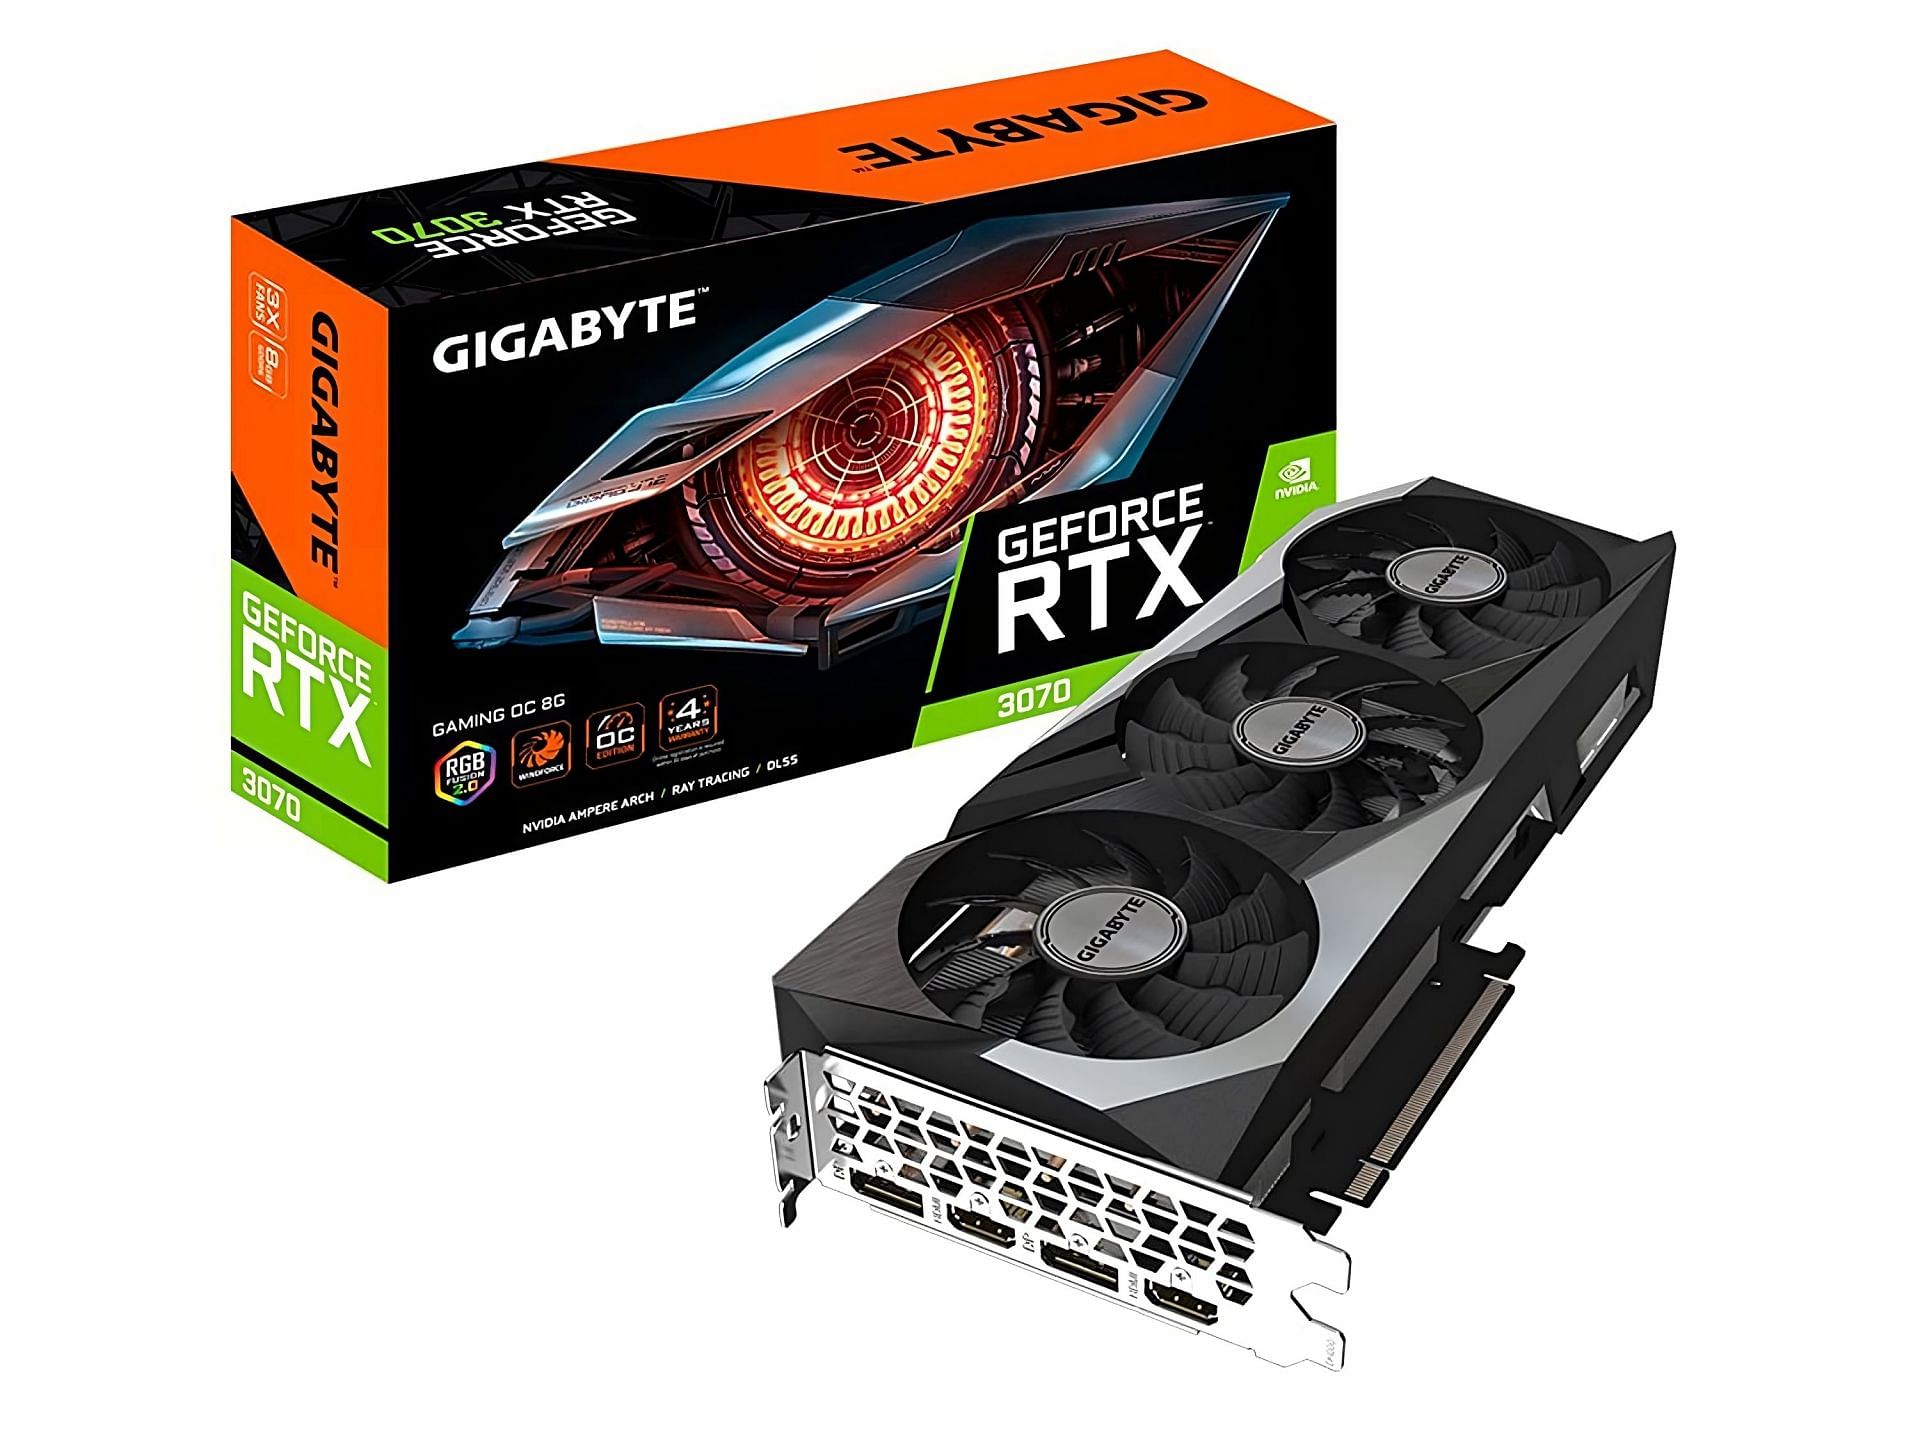 Nvidia GeForce RTX 3070(Image via Amazon)